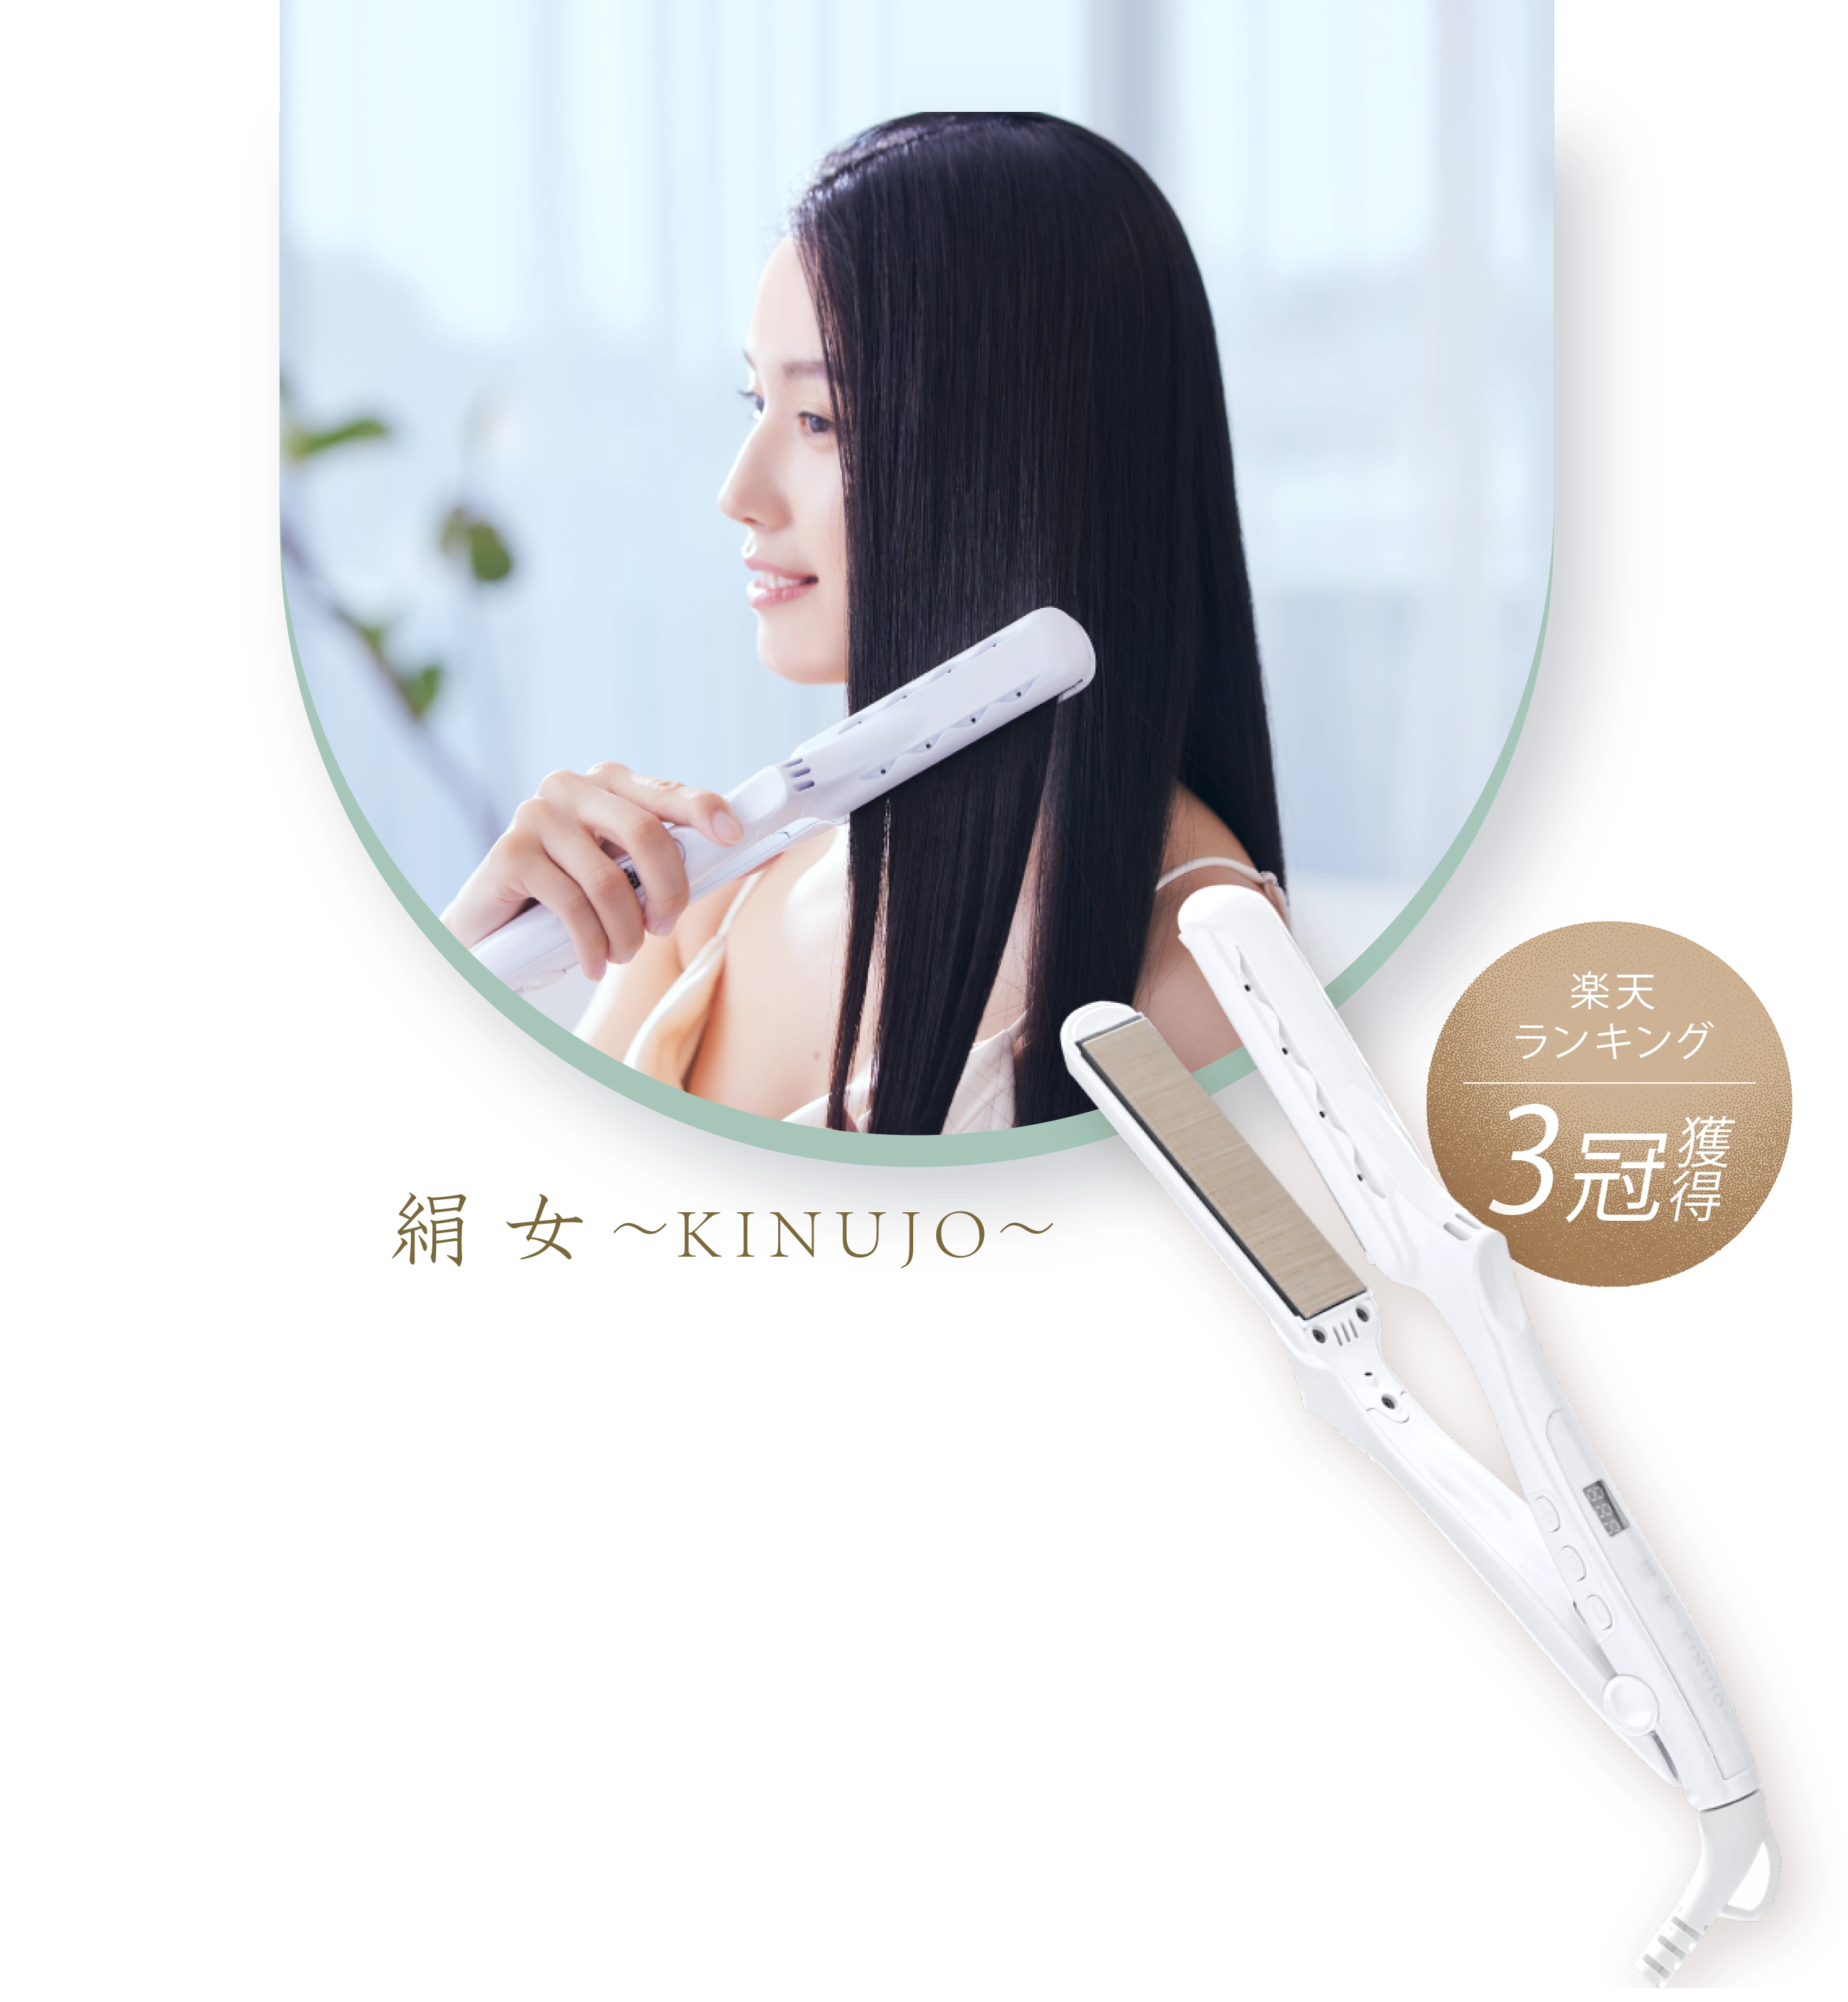 【新品未使用】絹女 キヌージョ ストレートヘアアイロン LM-125 ホワイト